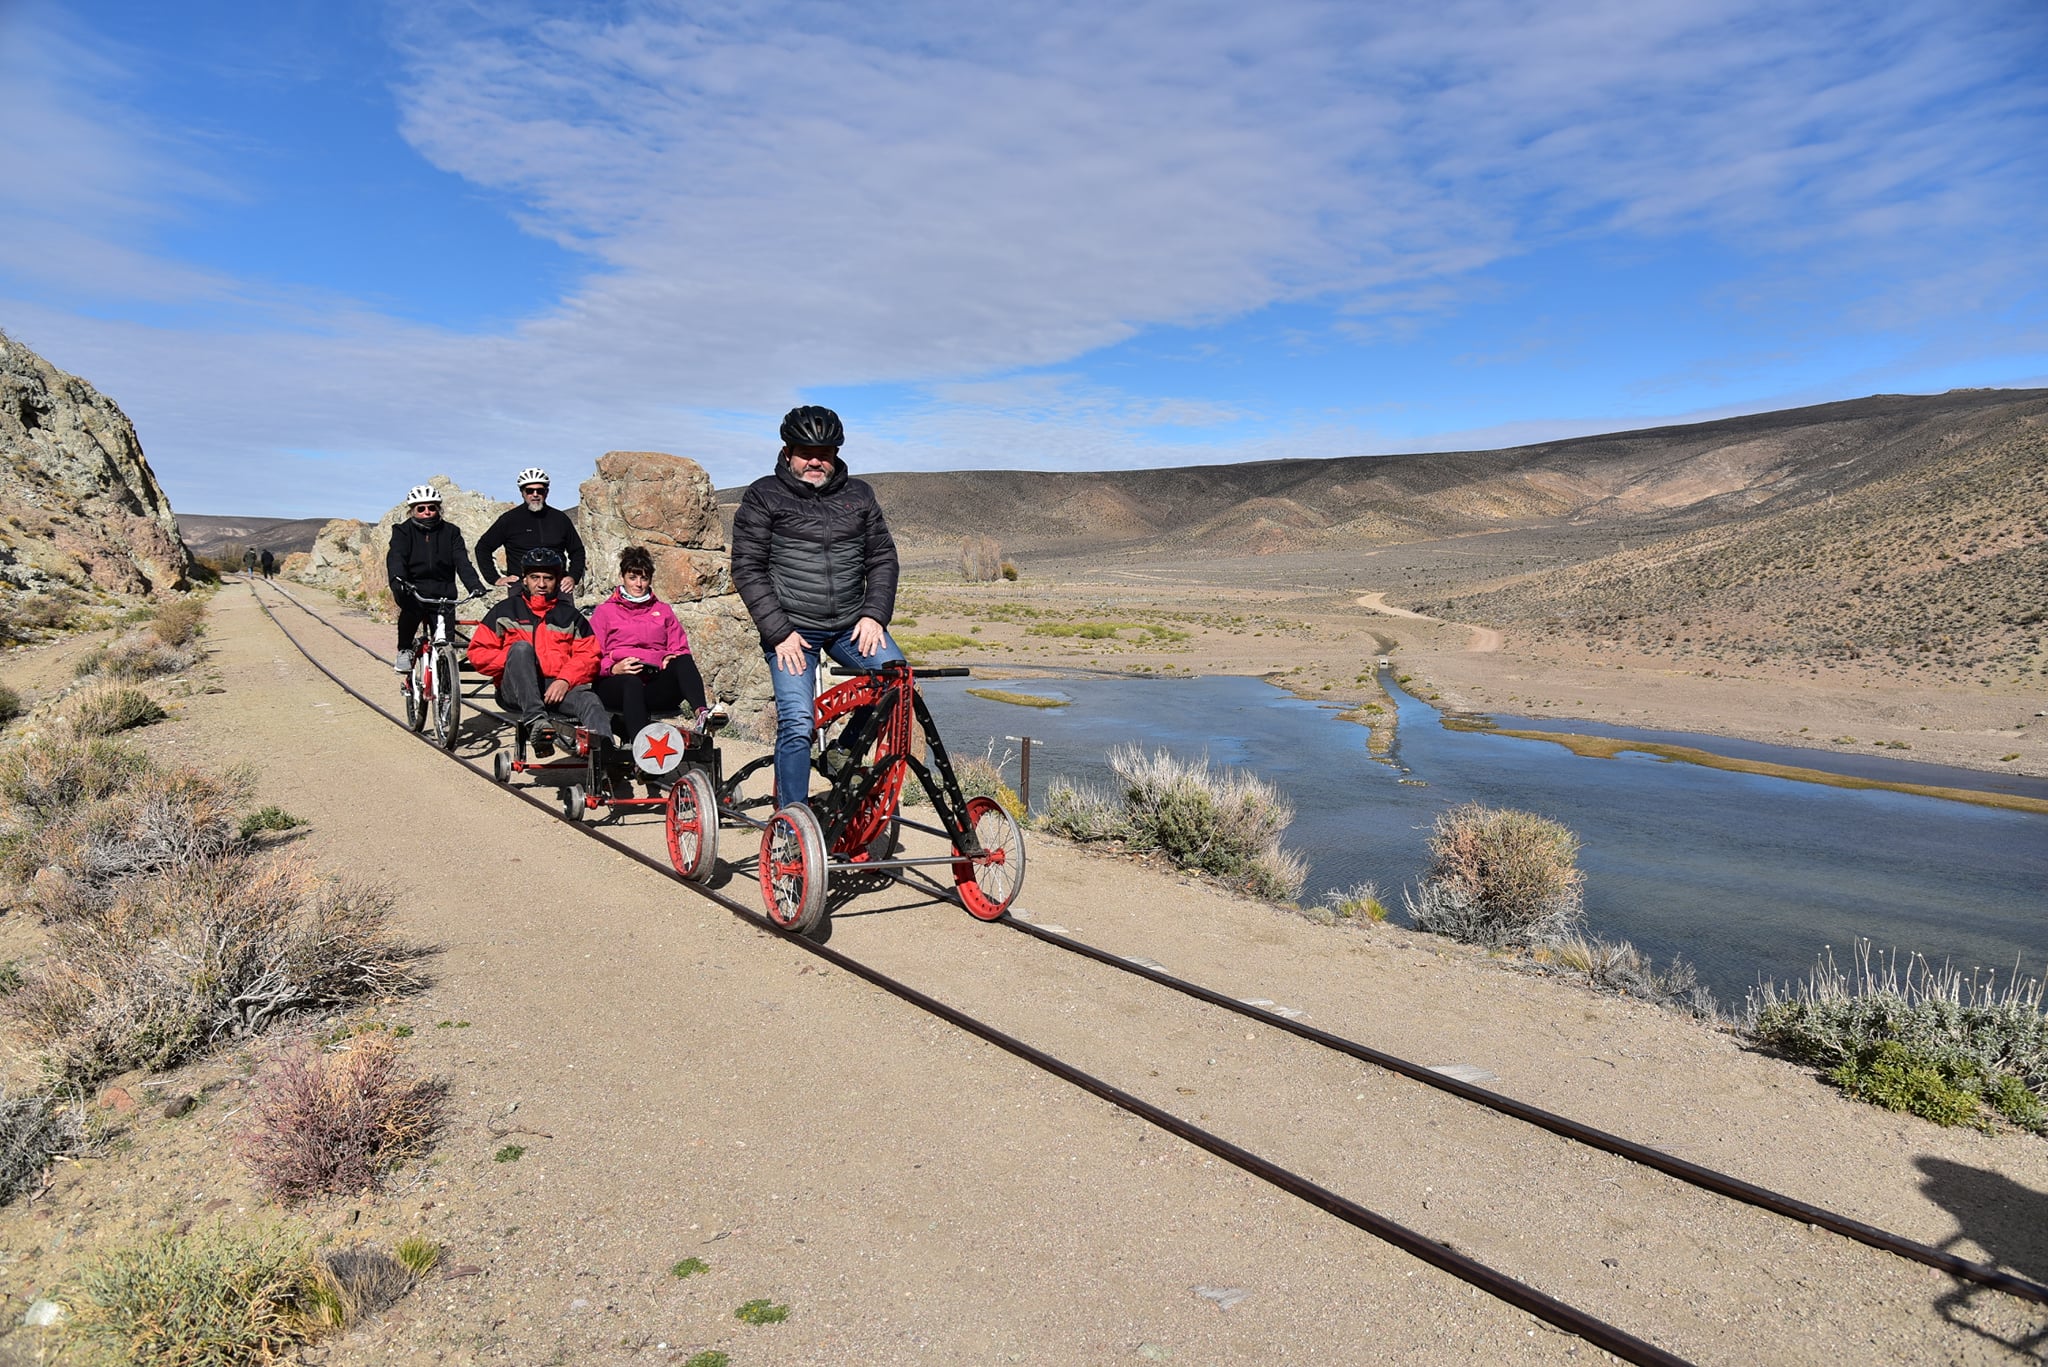 La incorporación de carritos y bicicletas adaptadas al trazado férreo, genera muchas expectativas para potenciar el turismo. Foto: Ente Región Sur. 